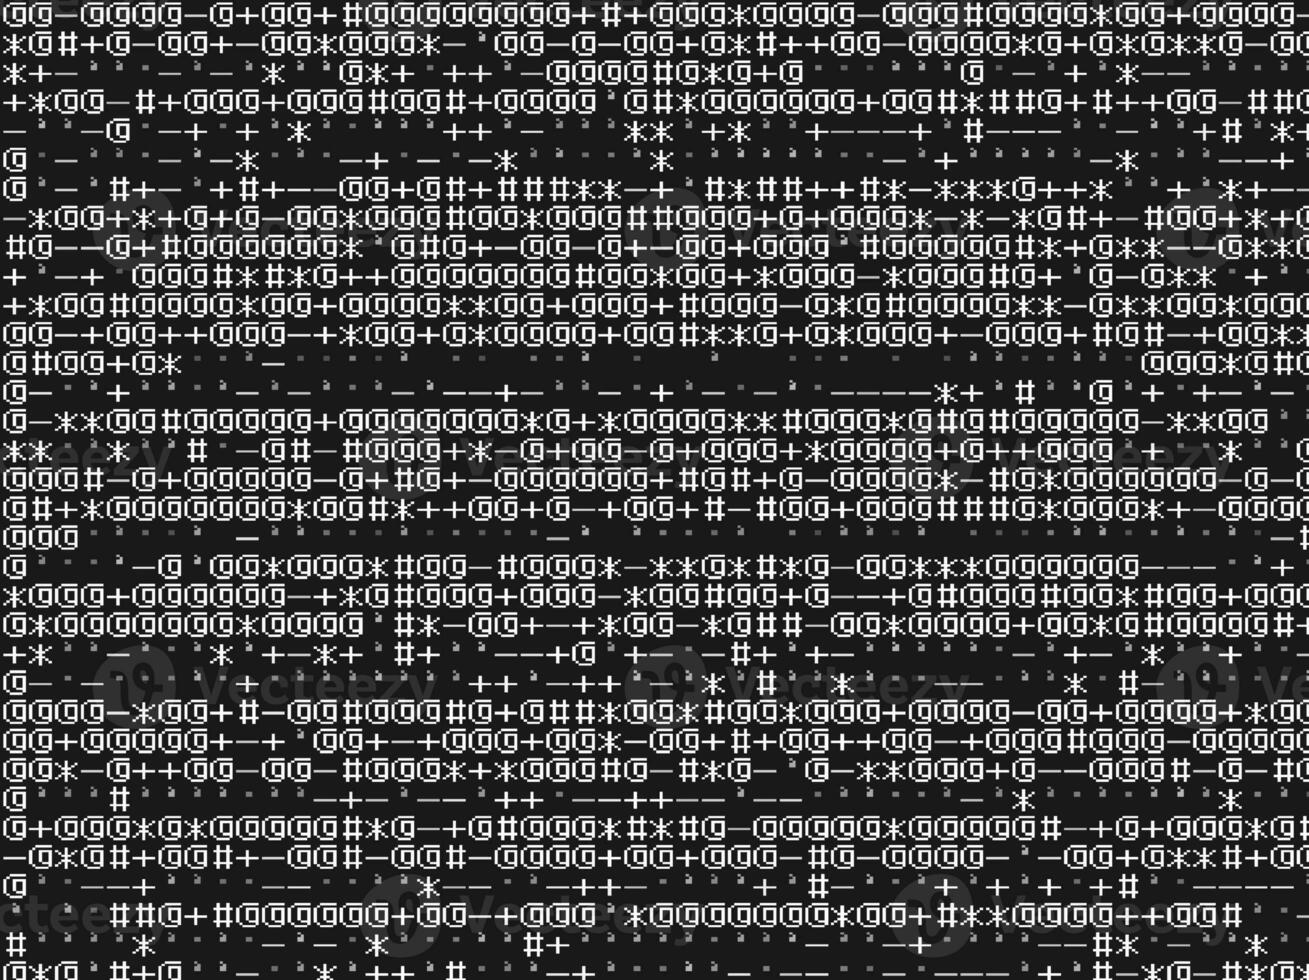 abstrato fundo com binário código, Preto e branco papel de parede ilustração foto